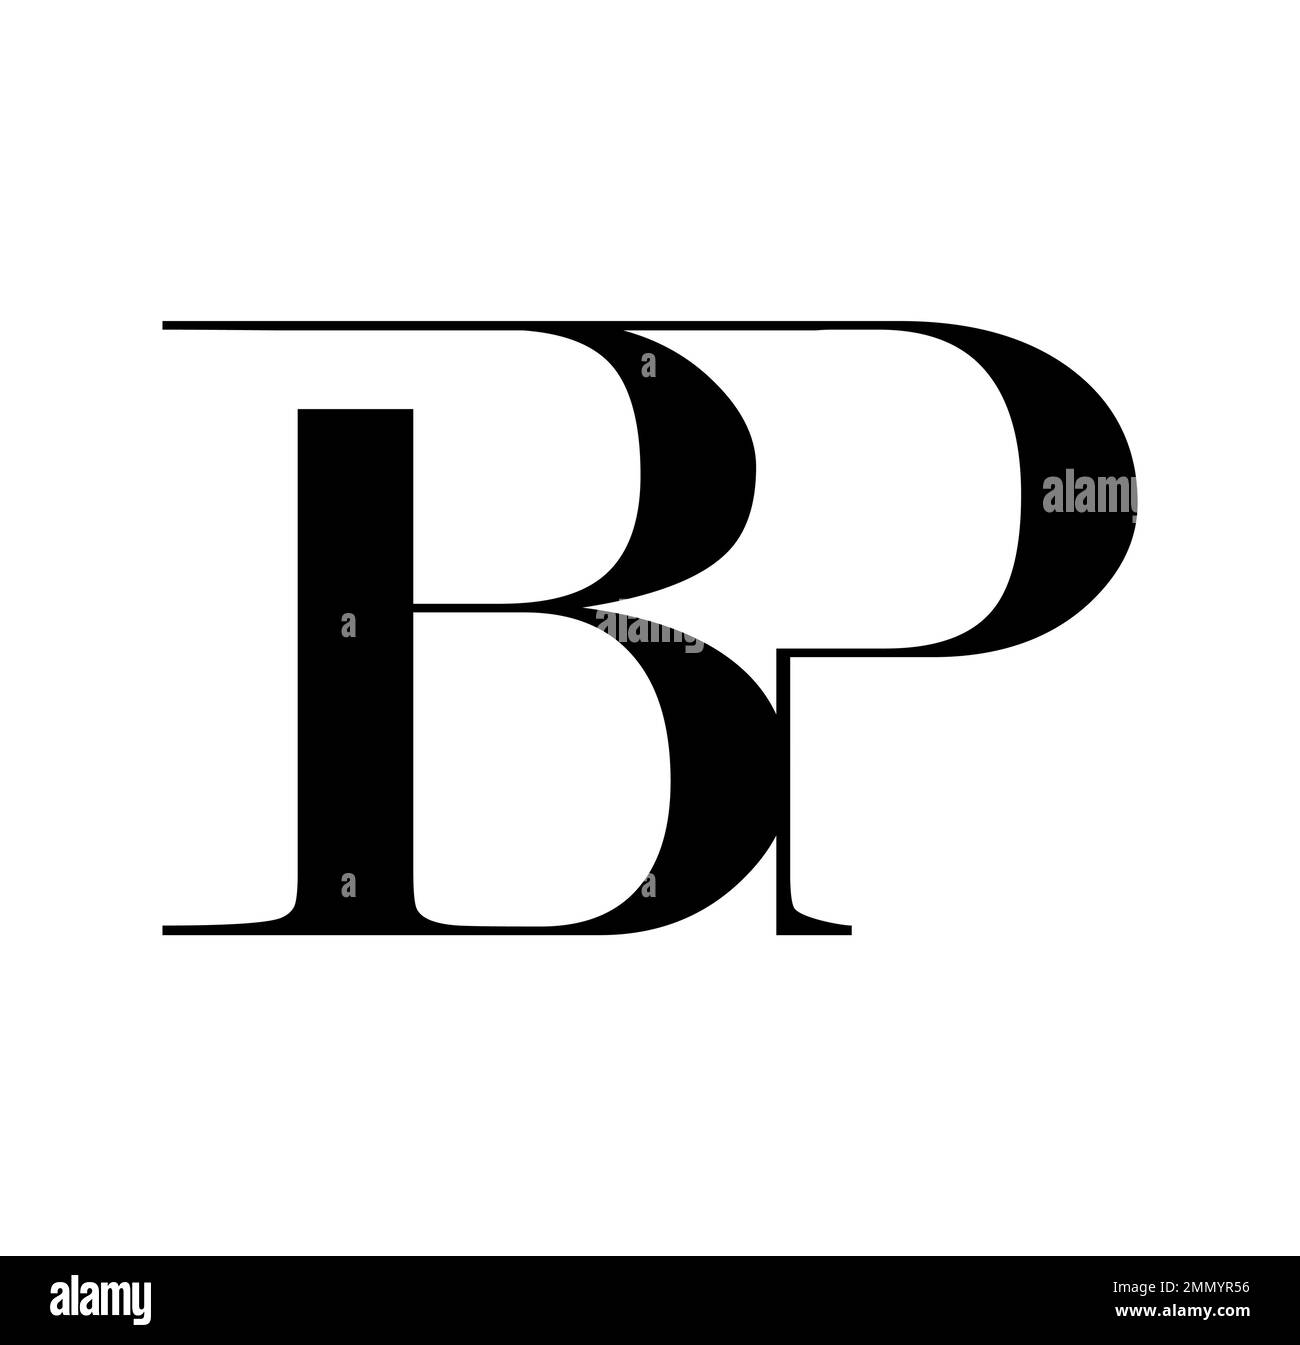 Illustration vectorielle isolée sur fond blanc de Monogram logo vecteur lettres initiales BP Illustration de Vecteur